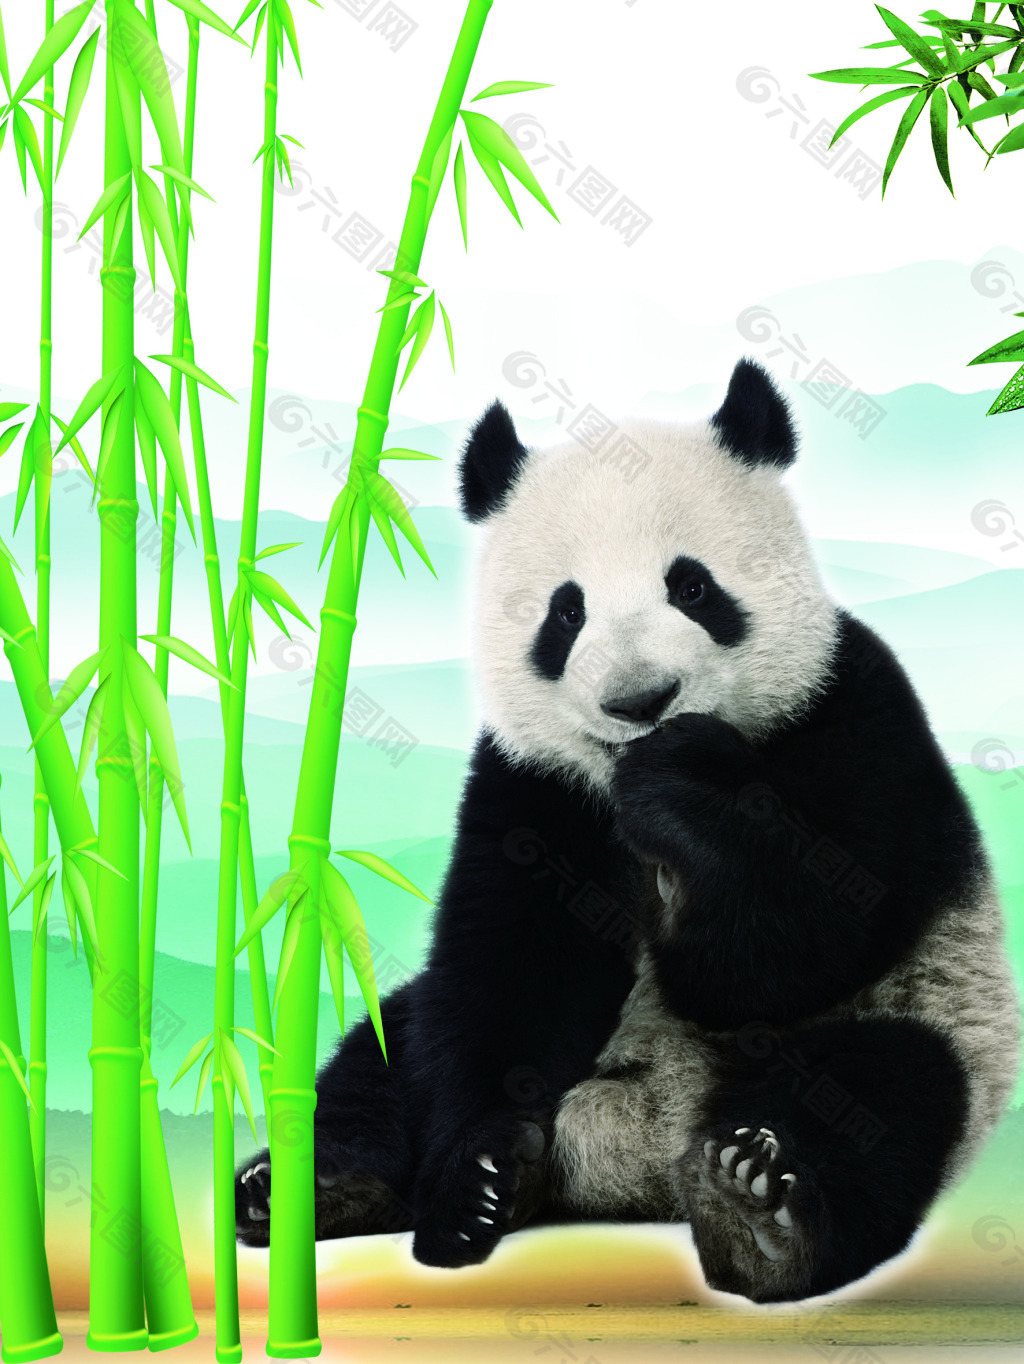 熊猫在竹林吃竹子图片,大熊猫吃竹子图片 - 伤感说说吧